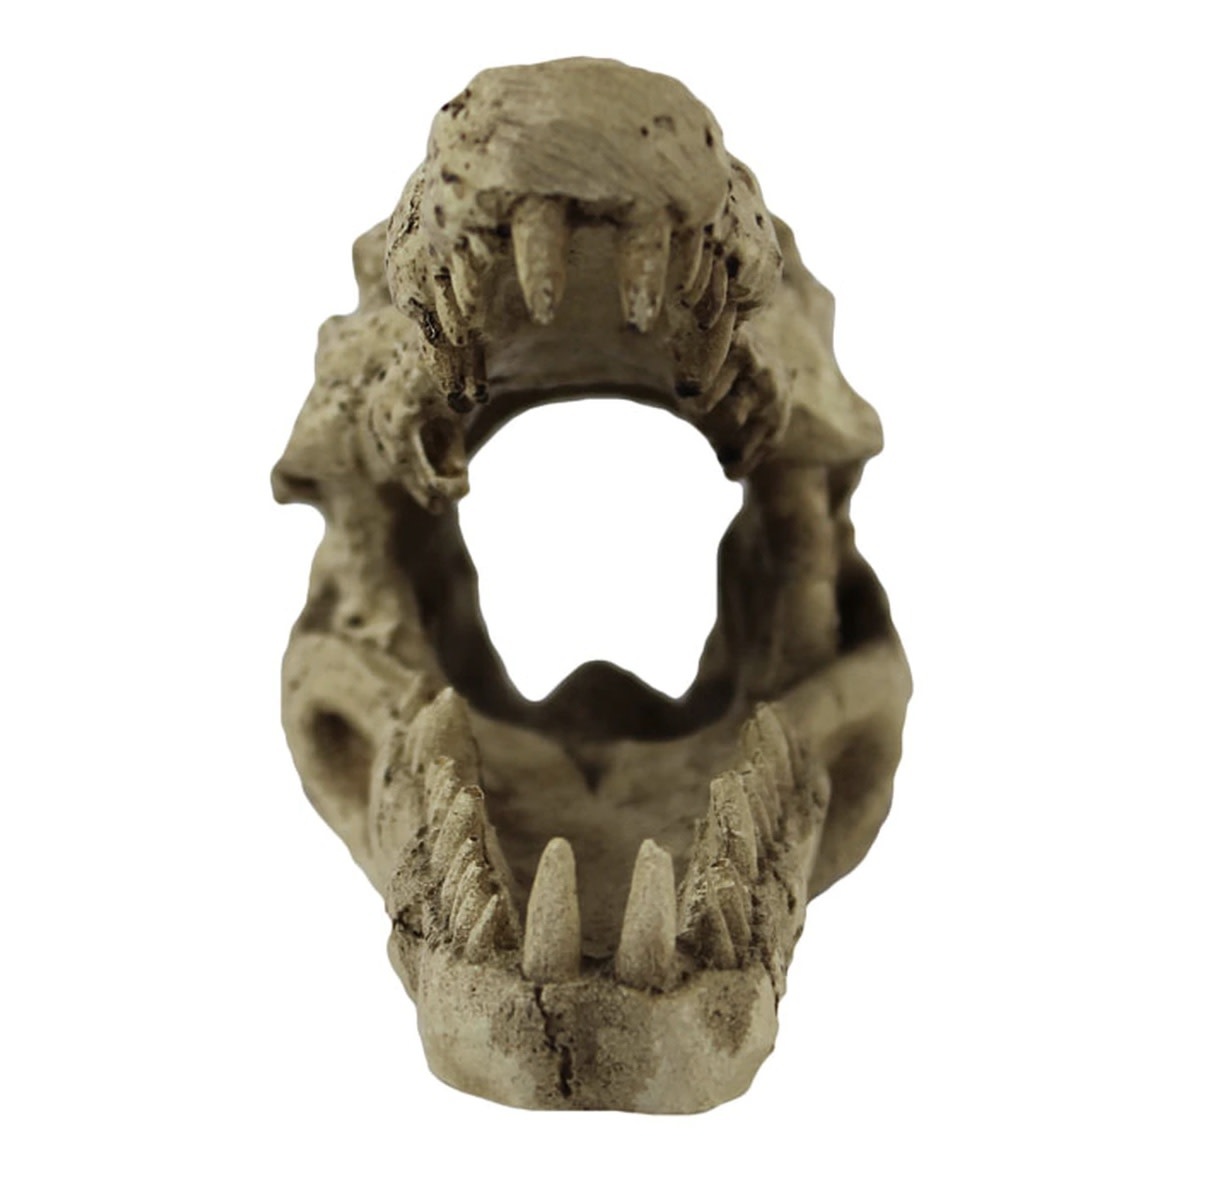 Pangea Beau crâne de crocodile - Crocodile Skull